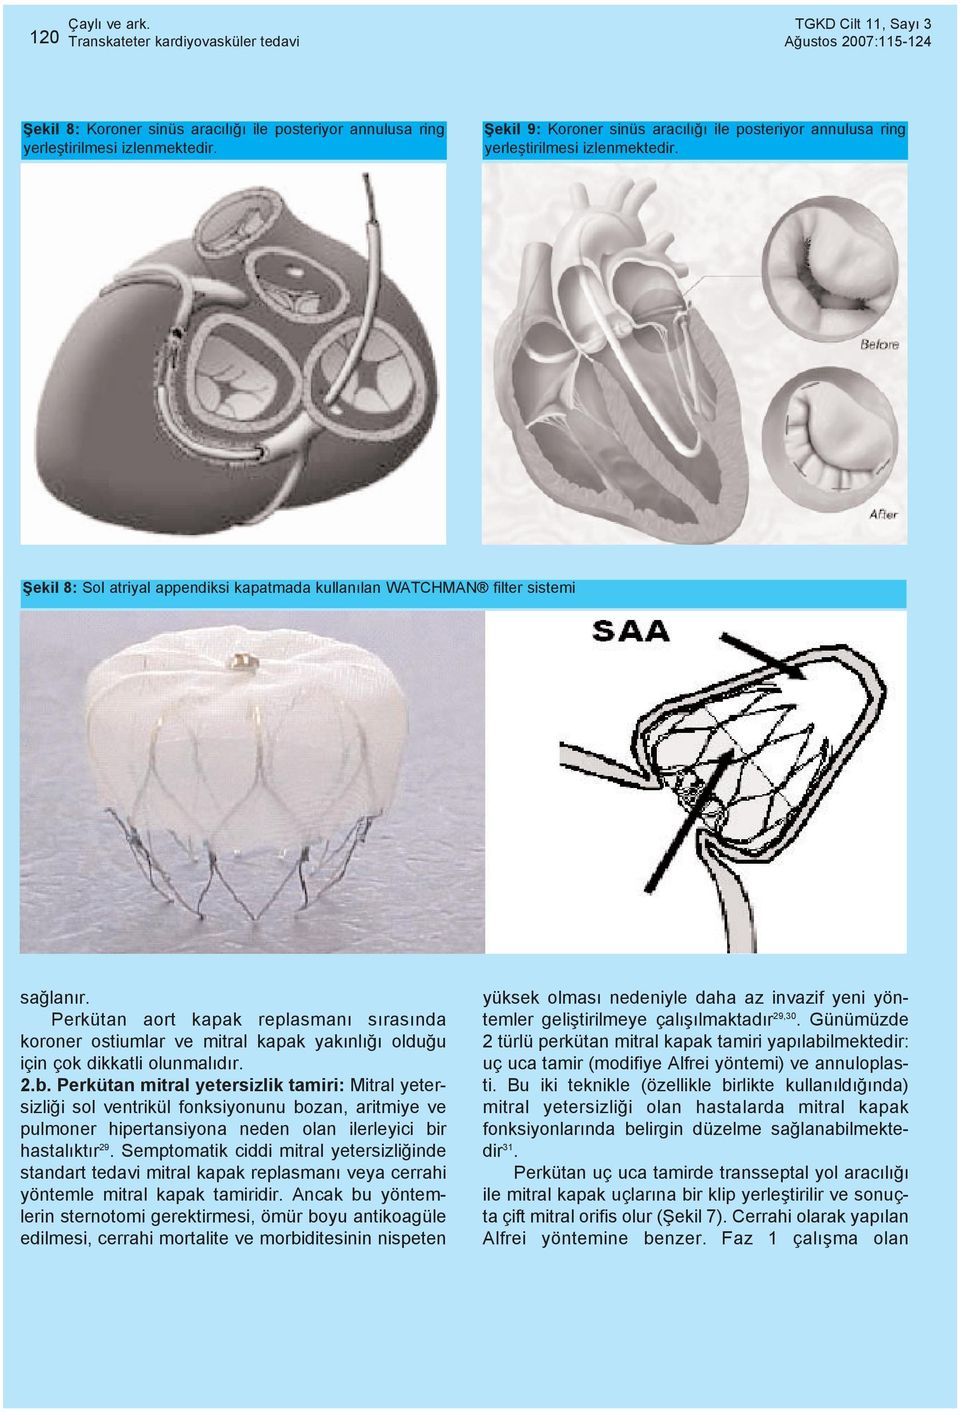 Perkütan aort kapak replasmaný sýrasýnda koroner ostiumlar ve mitral kapak yakýnlýðý olduðu için çok dikkatli olunmalýdýr. 2.b.